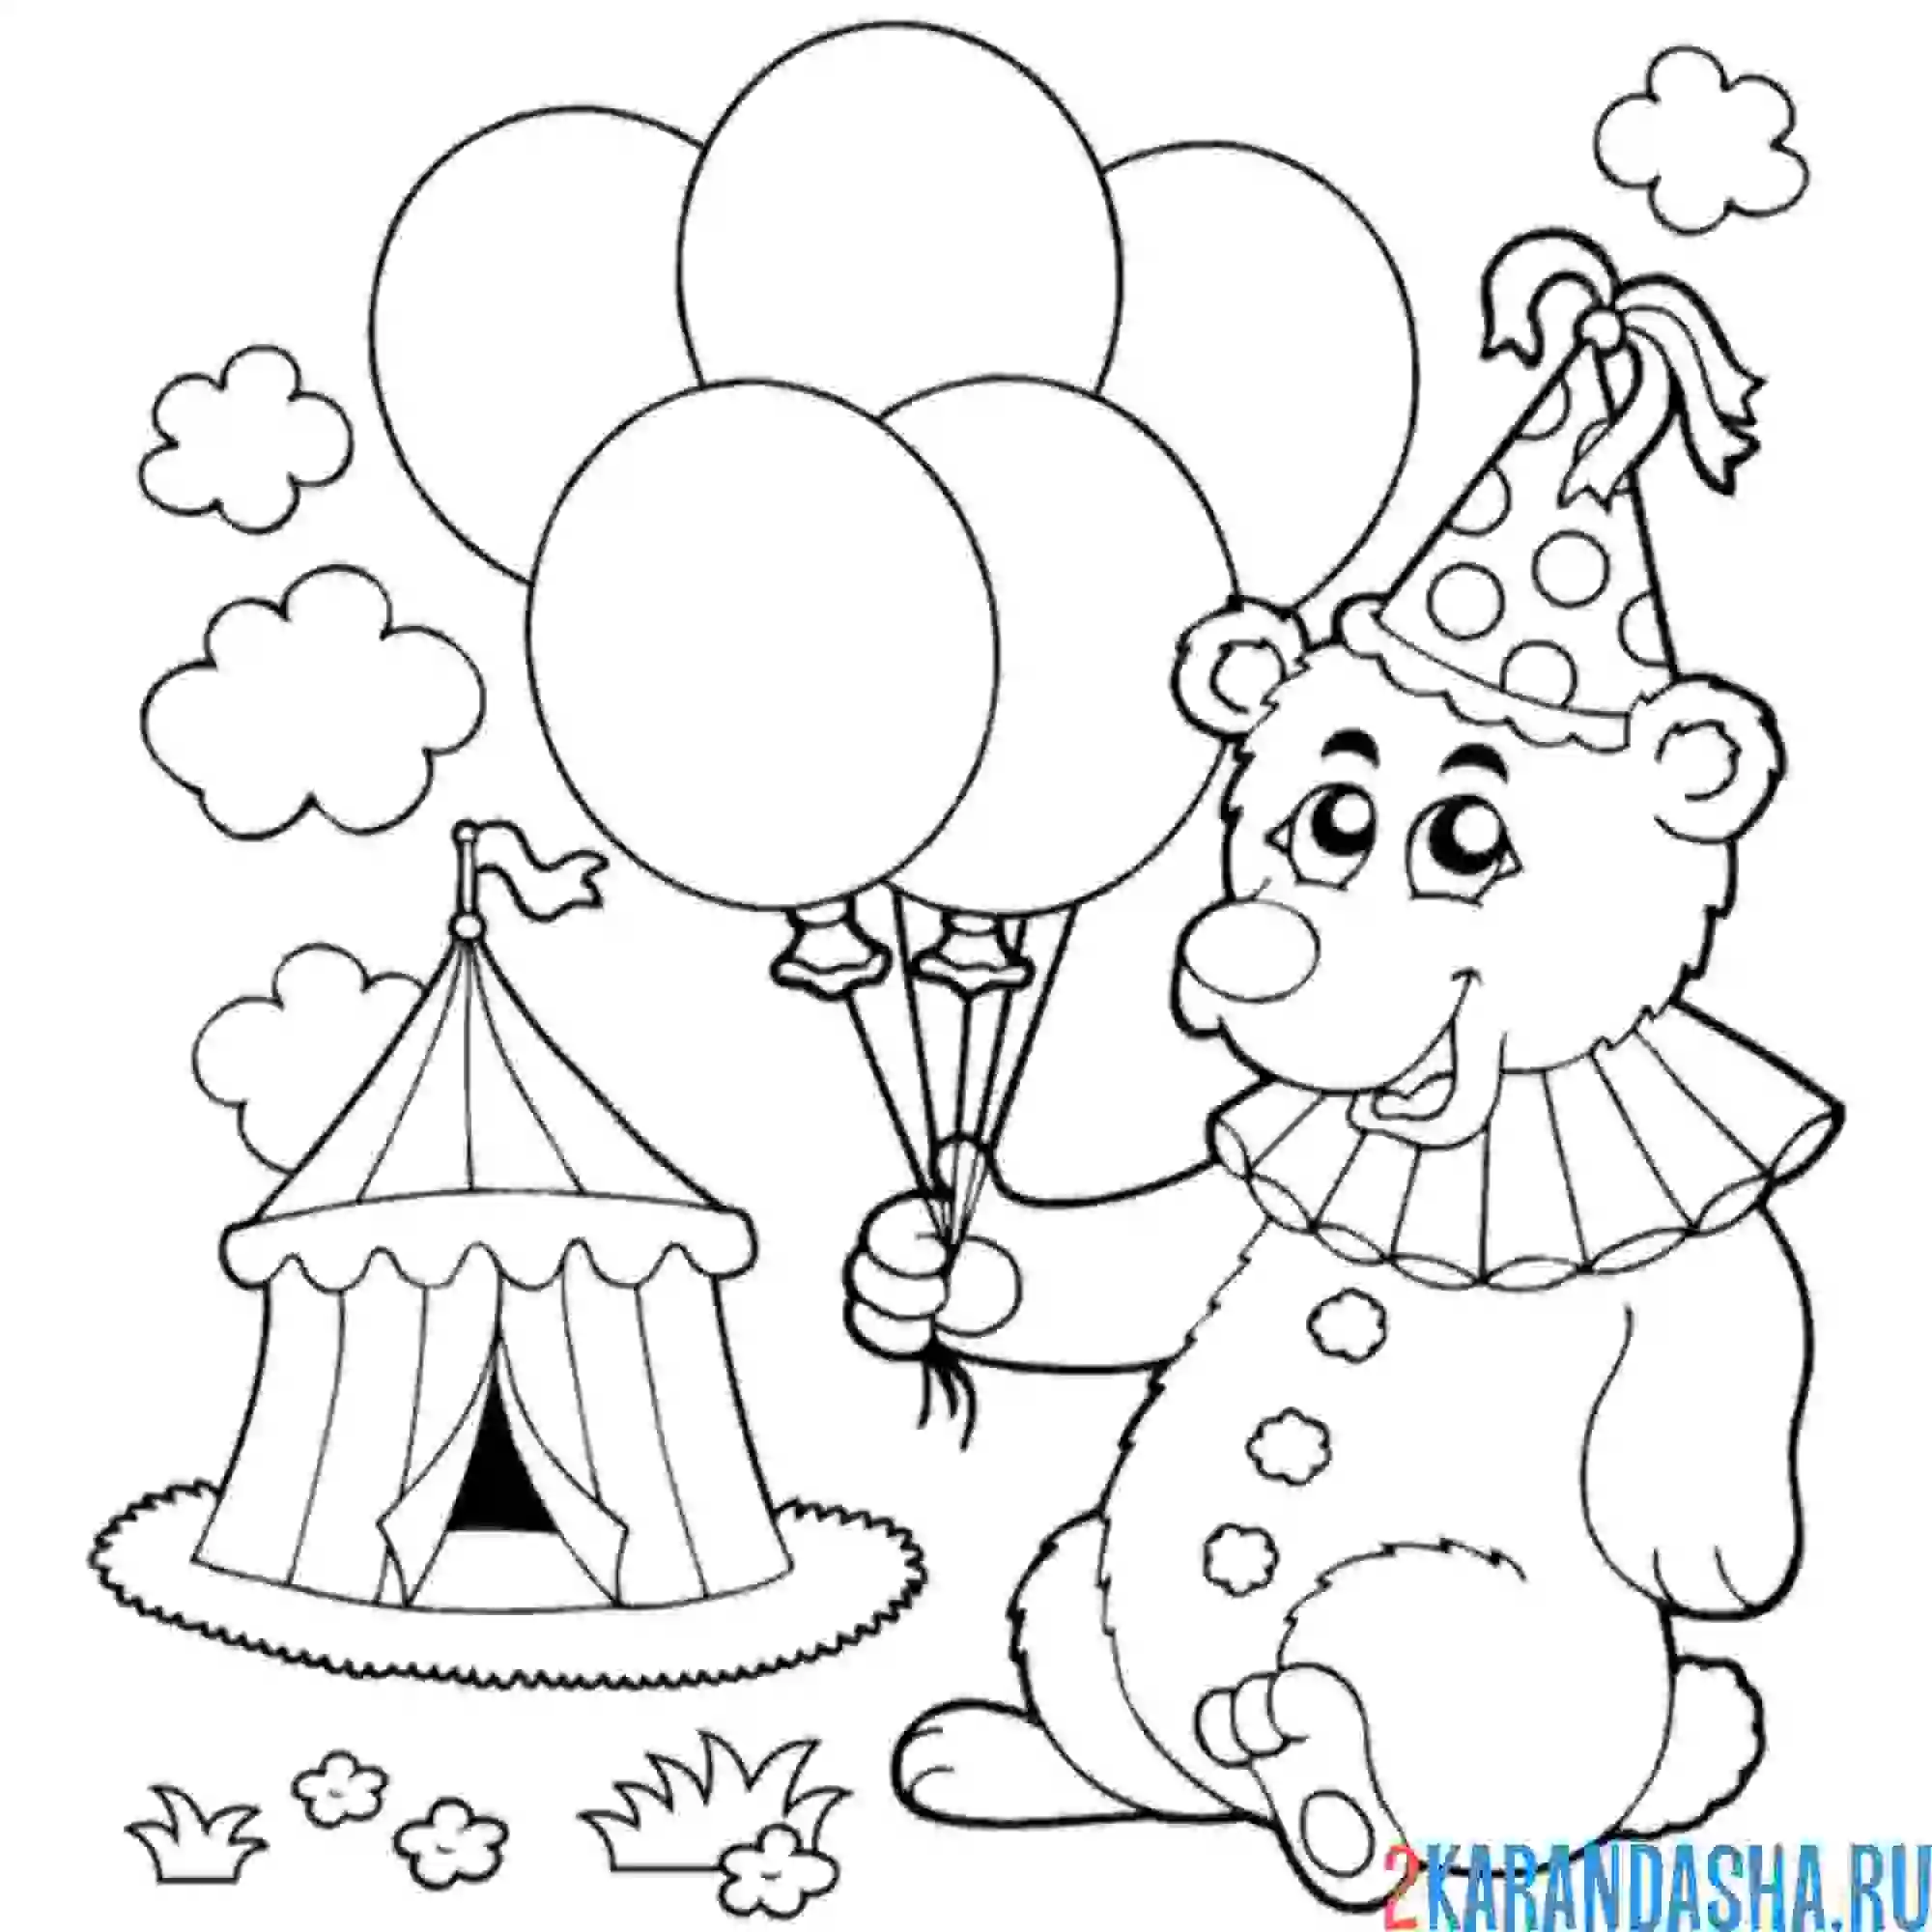 Раскраска медведь на день рождения с шариками